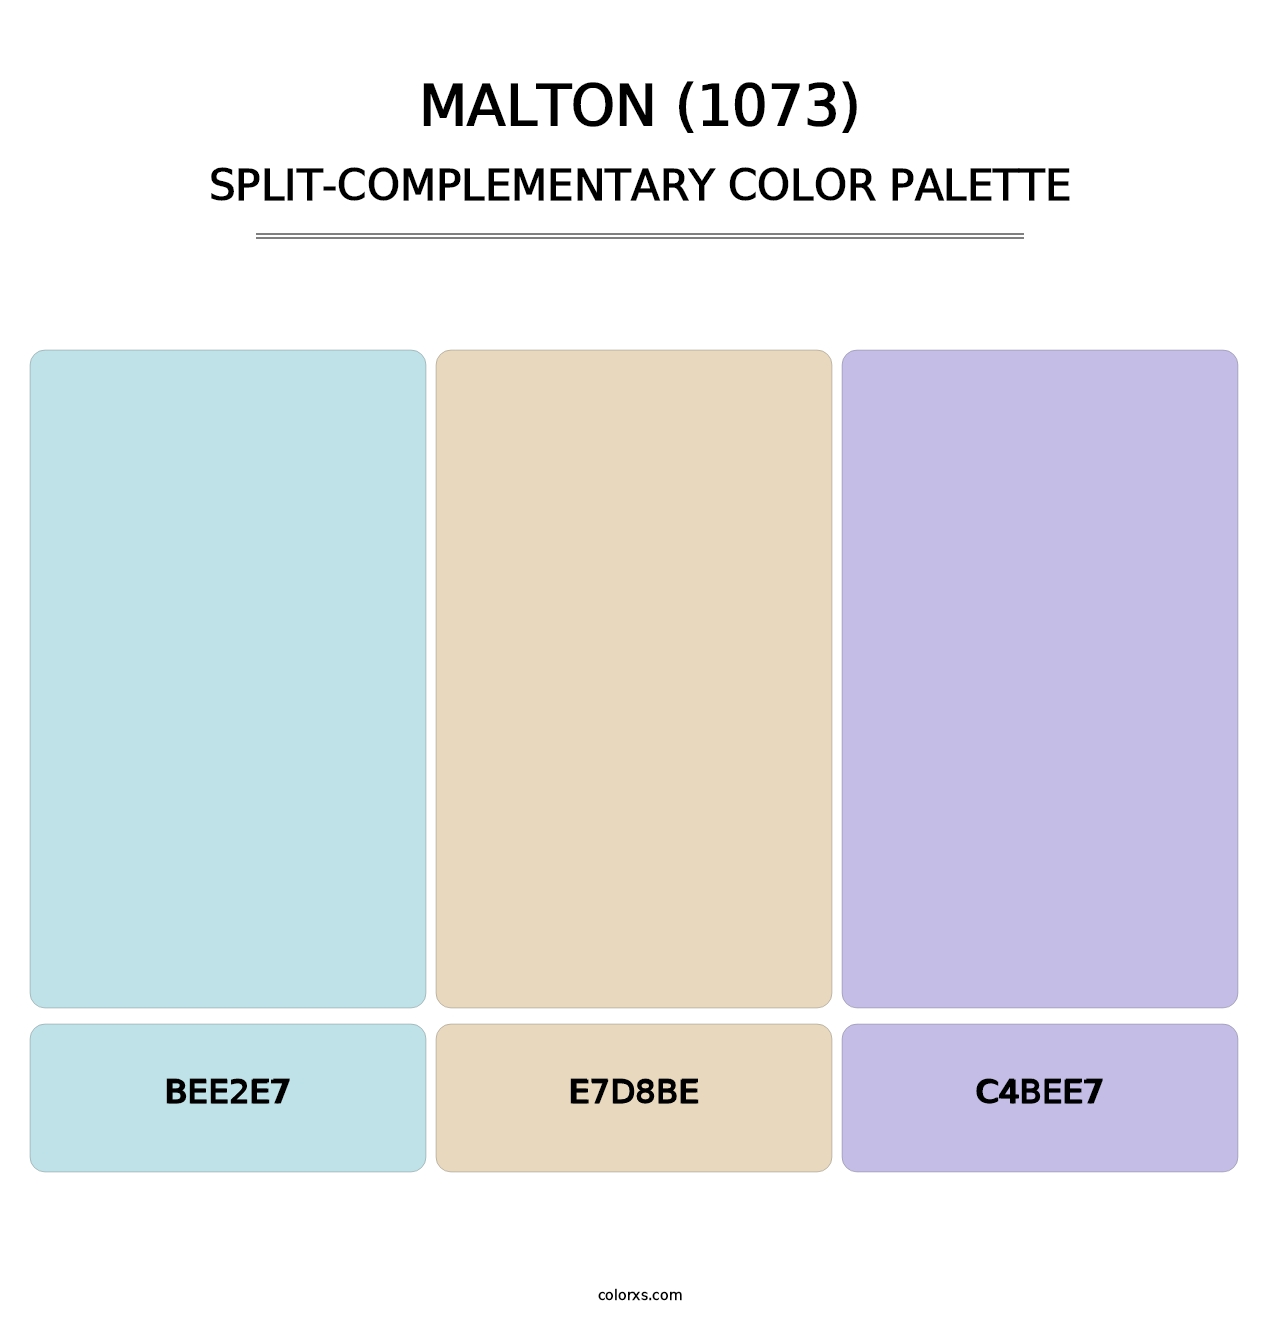 Malton (1073) - Split-Complementary Color Palette